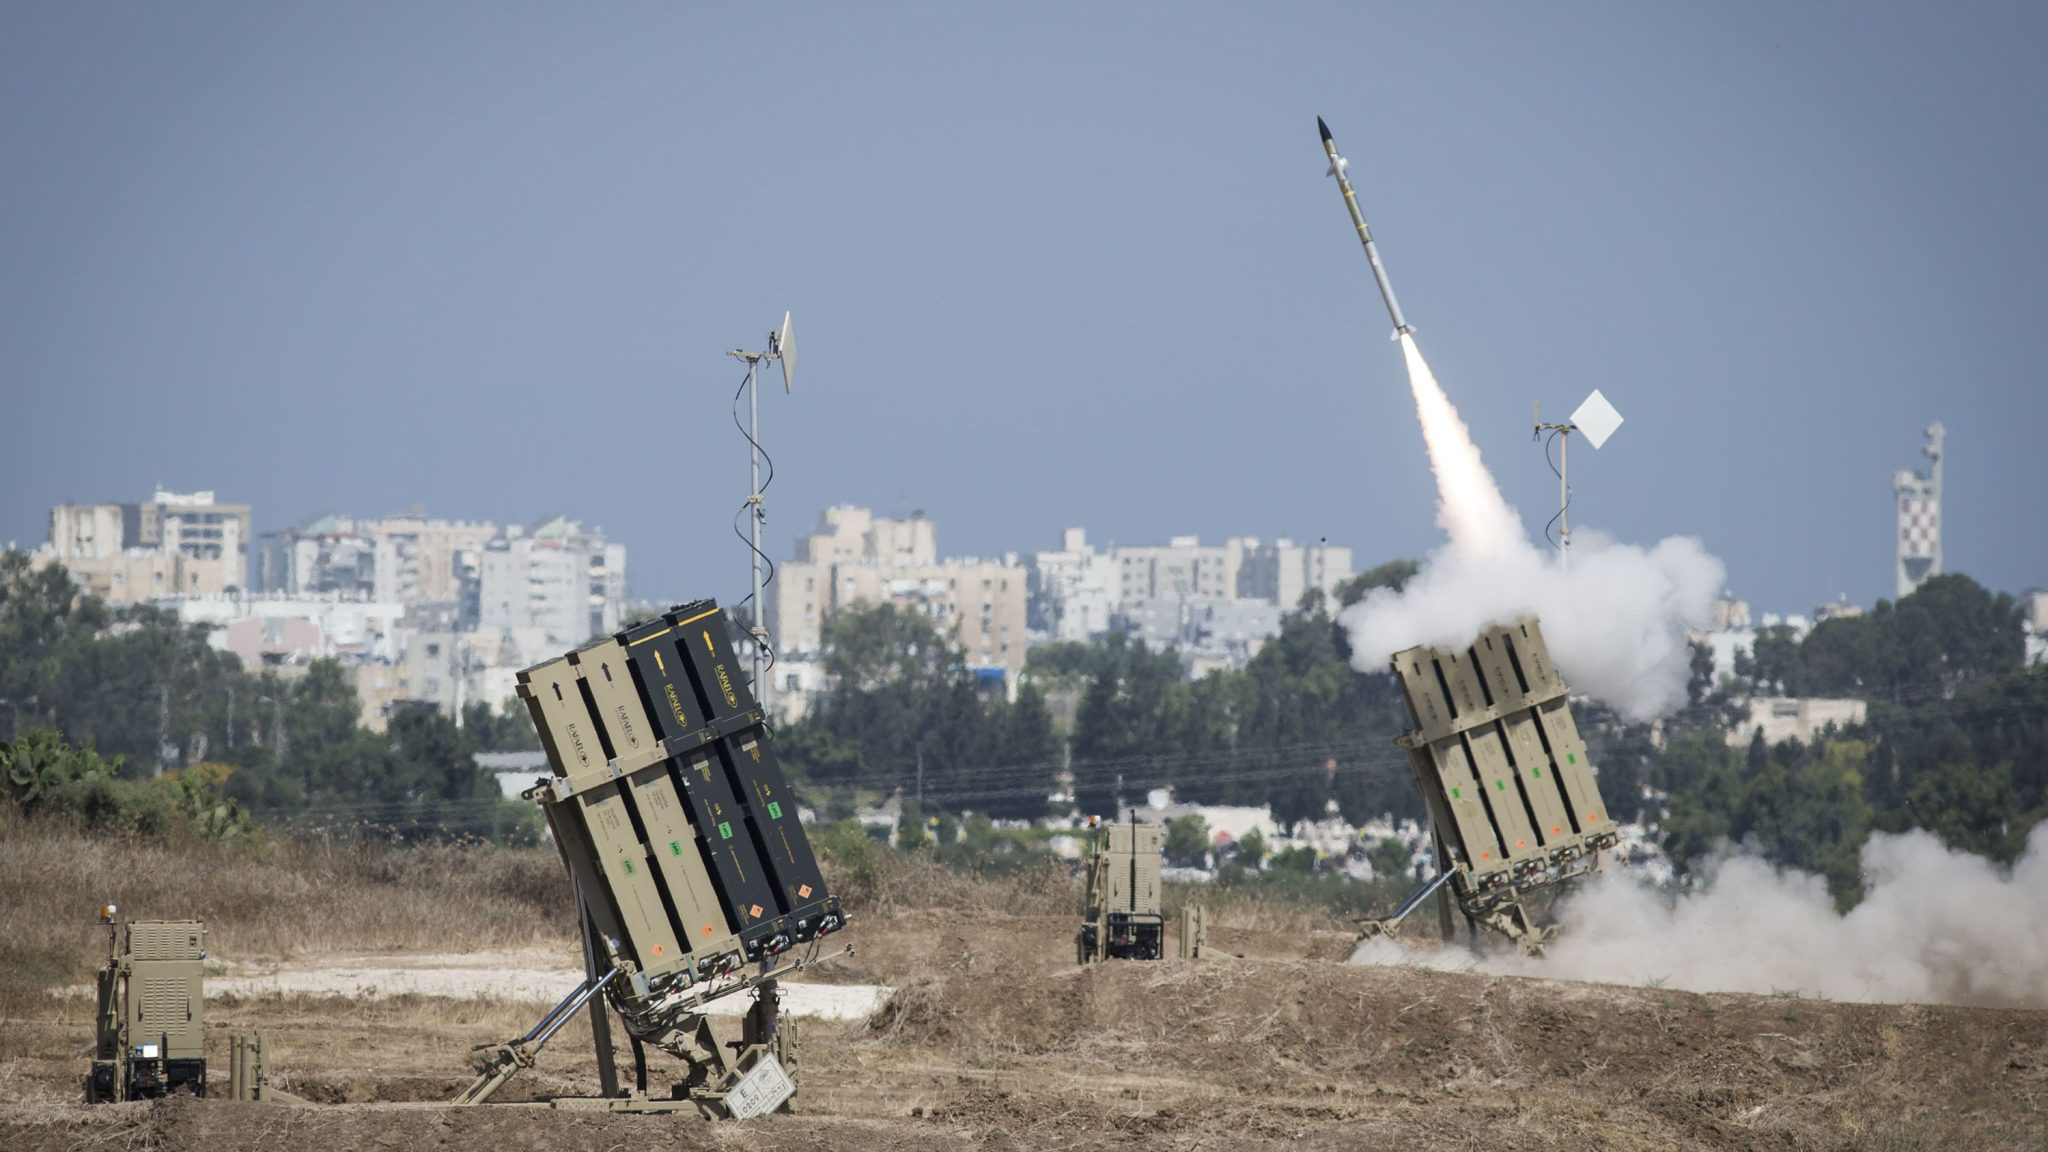 Το Ισραήλ έτοιμο να πάρει θέση υπέρ της Ουκρανίας με αποστολή όπλων: «Θα πάρουμε μια πιο επιθετική θέση απέναντι στη Ρωσία»